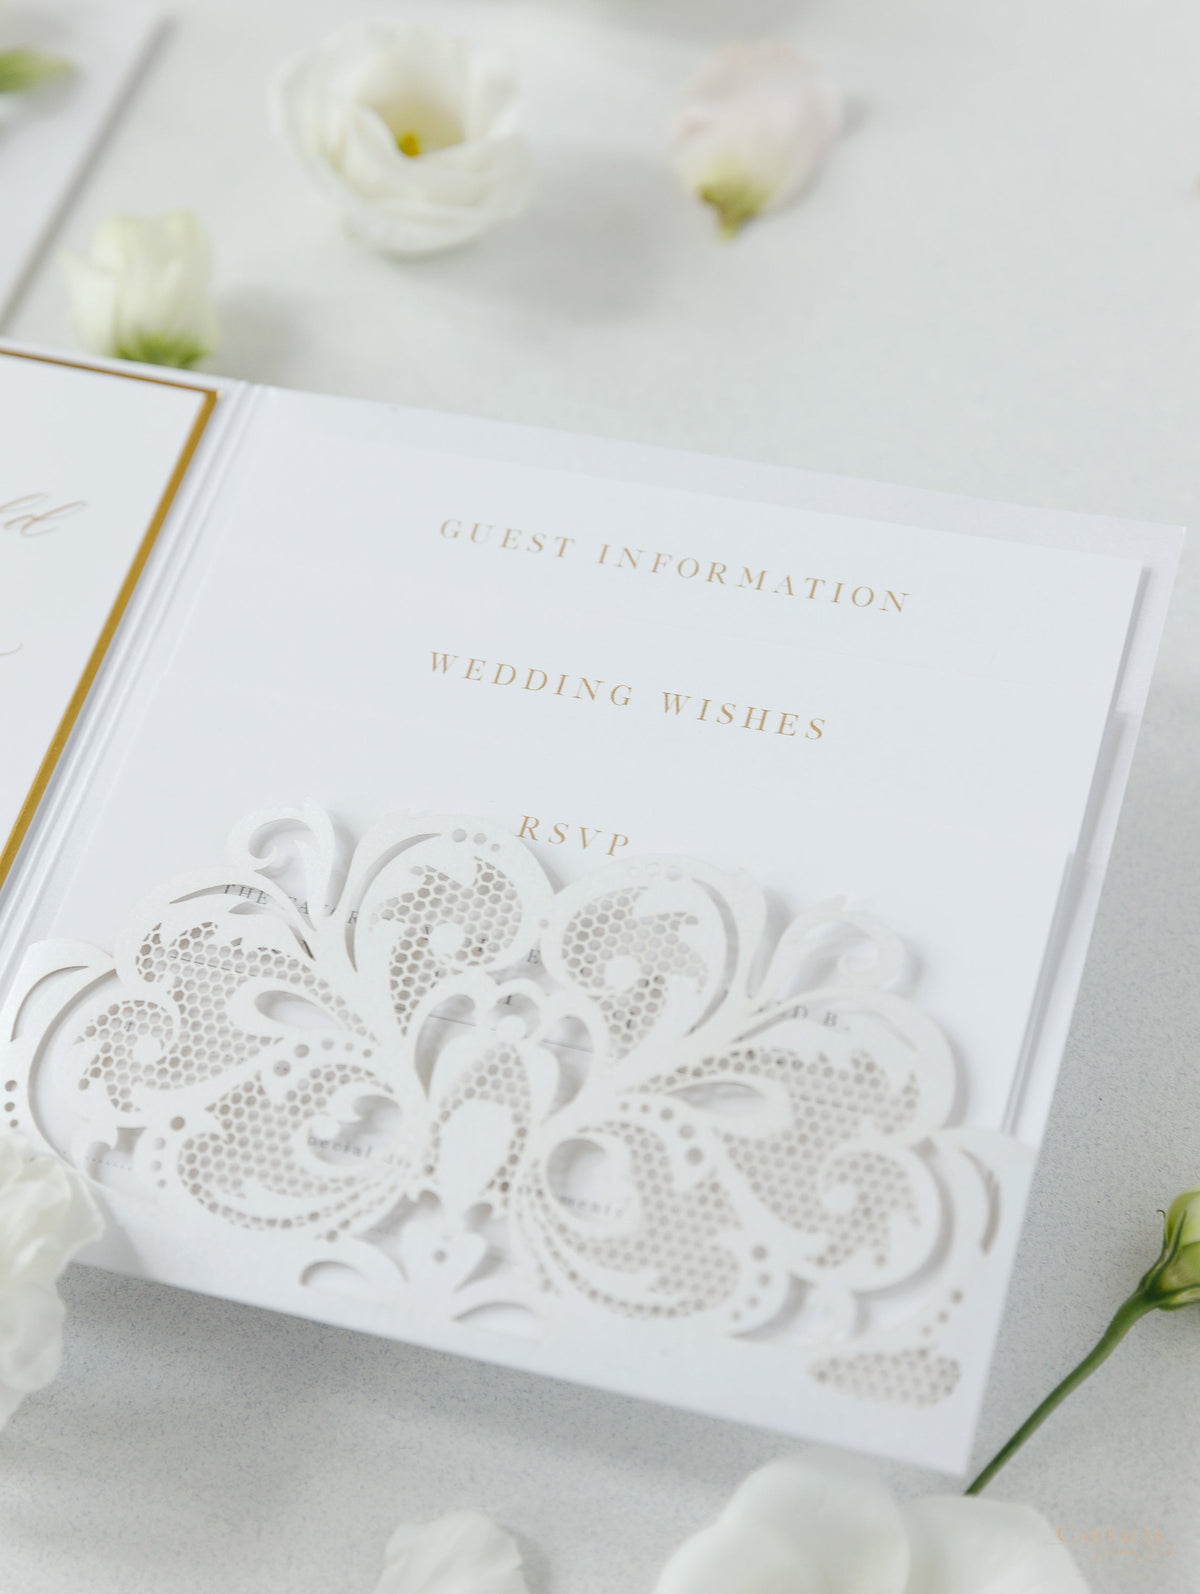 Suite de invitación de boda de lujo con bolsillo y encaje cortado con láser, color blanco y dorado, con 3 niveles: Información para huéspedes, viajes y tarjeta de confirmación de asistencia